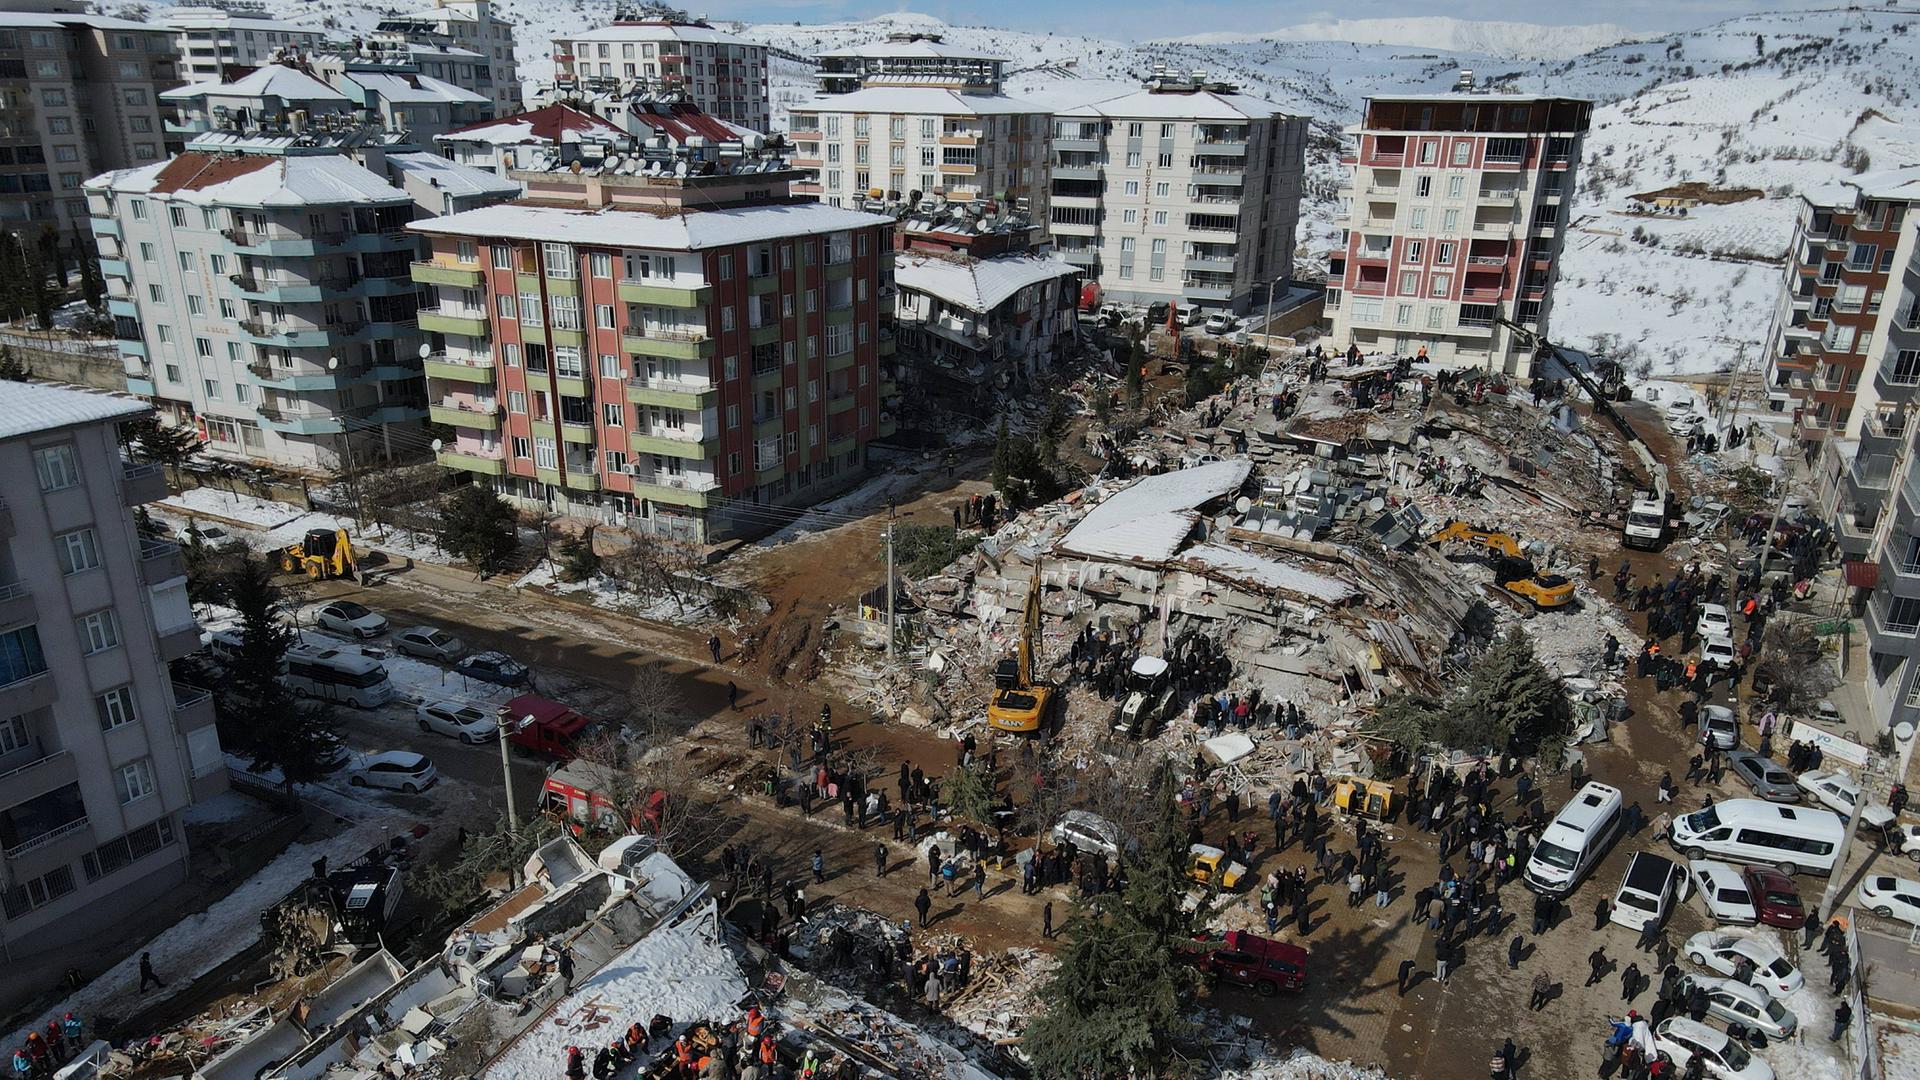 Luftansicht eines komplett zerstörten Häuserblocks nach den Erdbeben Anfang Februar 2023.